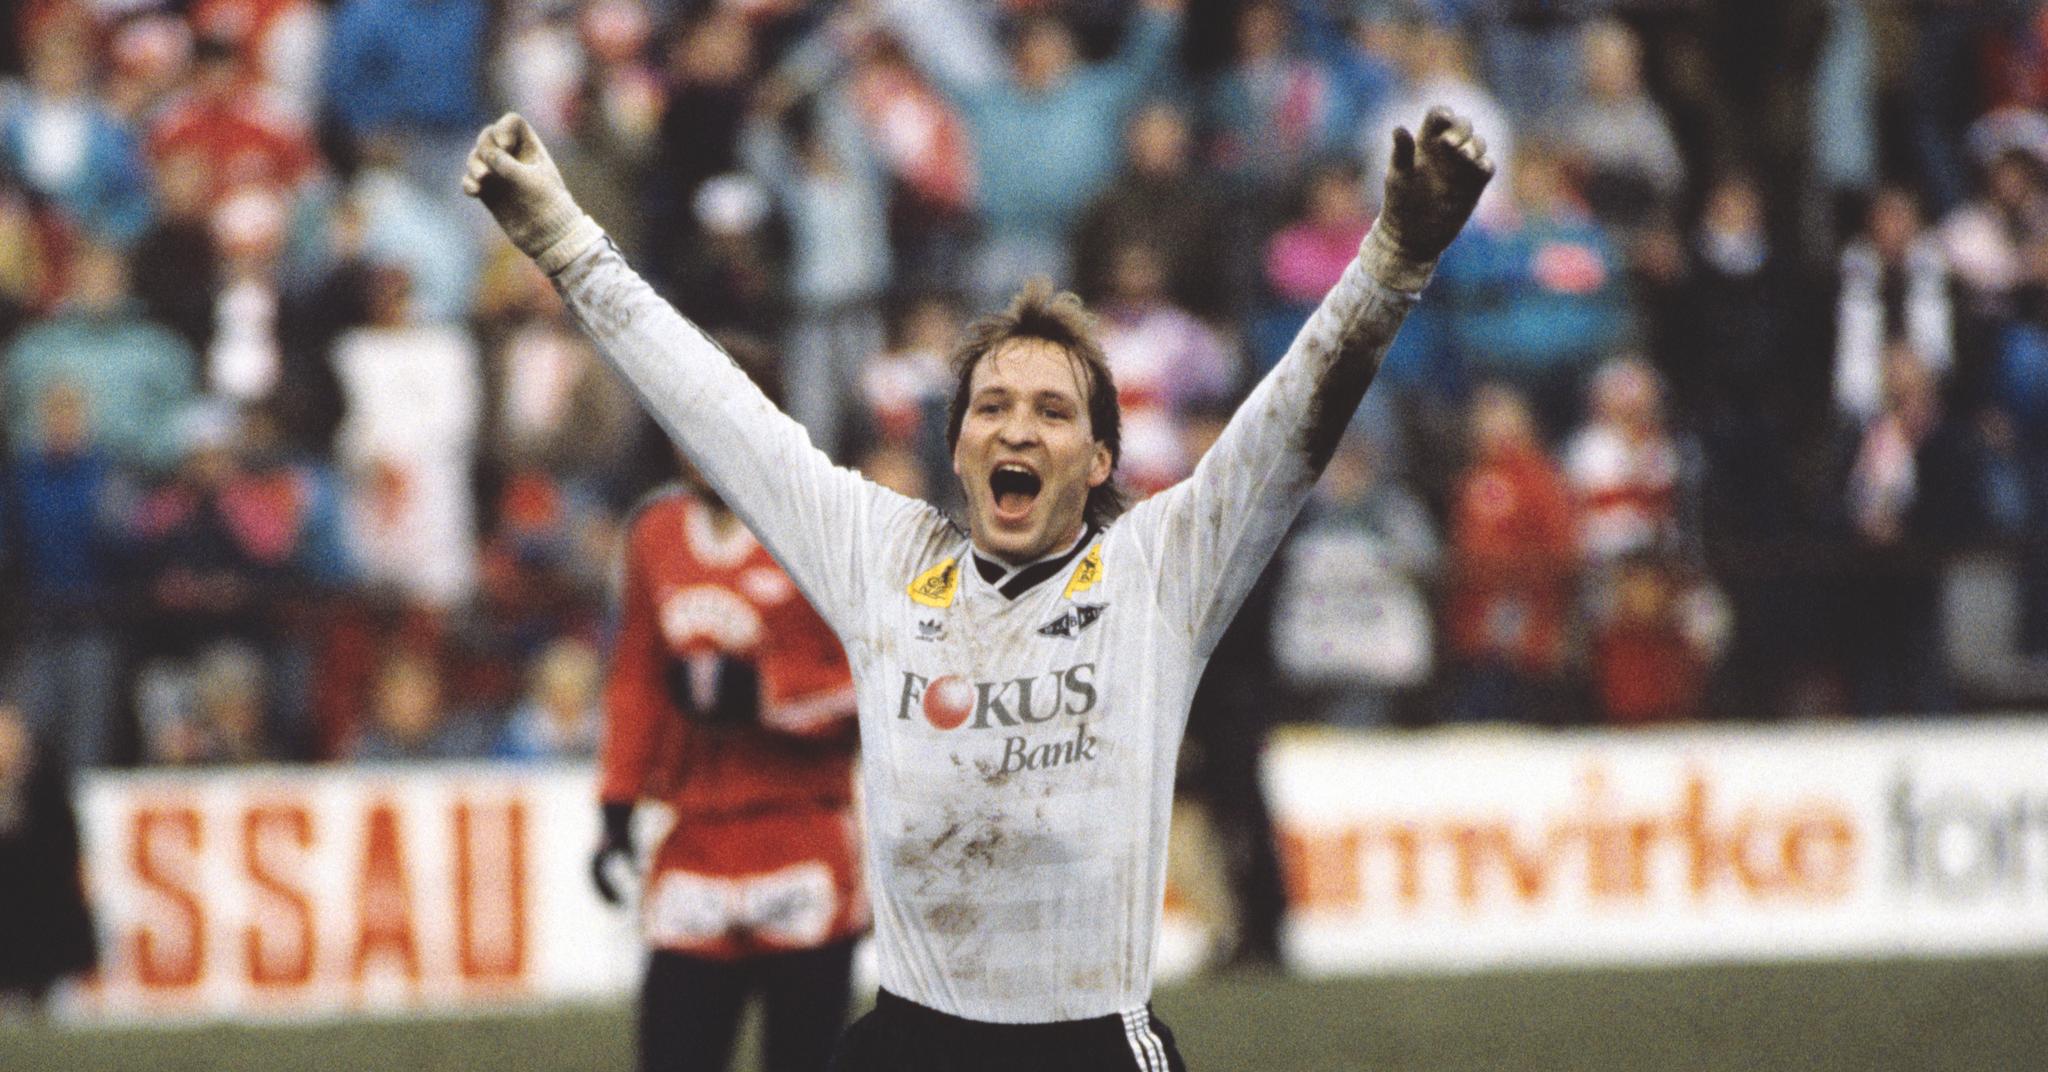 CUPFINALEHELT: Gøran Sørloth, her fra cupfinalen i 1988, er en av mange RBK-spillere som har markert seg sterkt å oppgjørene mot Brann.